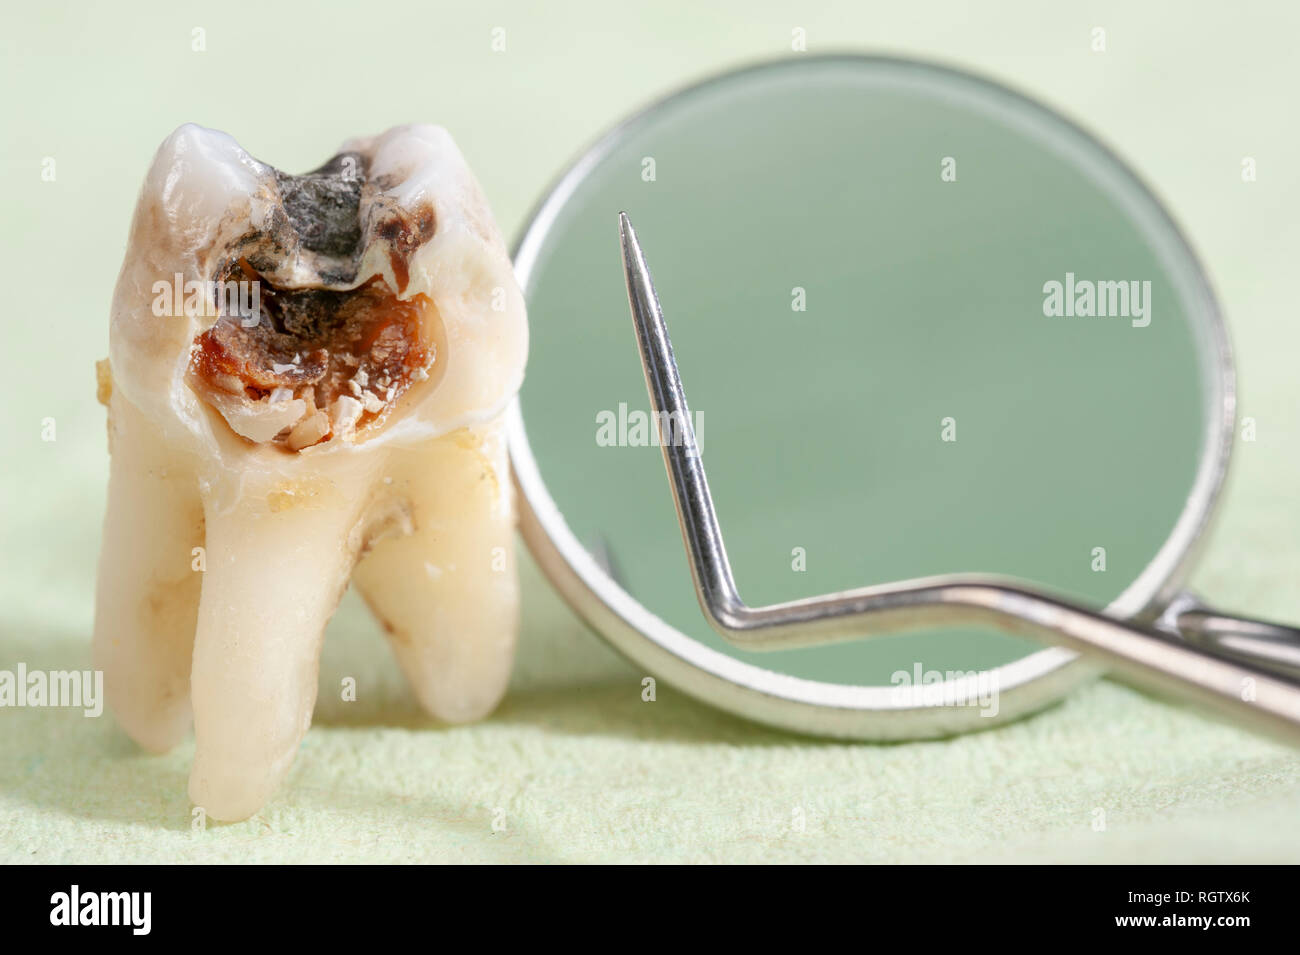 Estratto il dente molare con la carie e amalgama Foto Stock